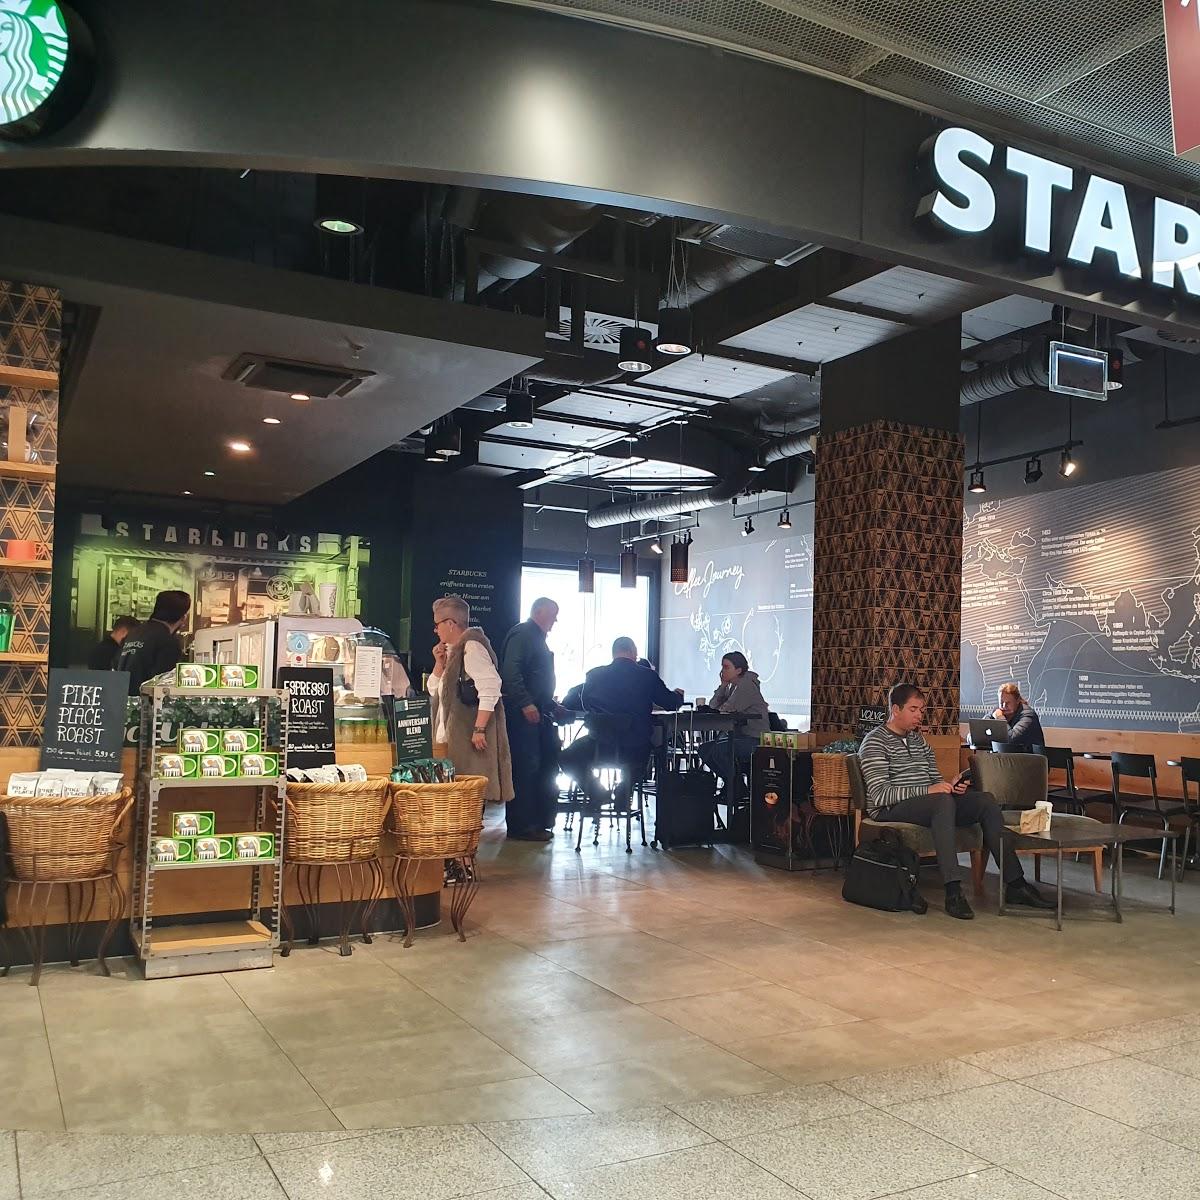 Restaurant "Starbucks" in Düsseldorf